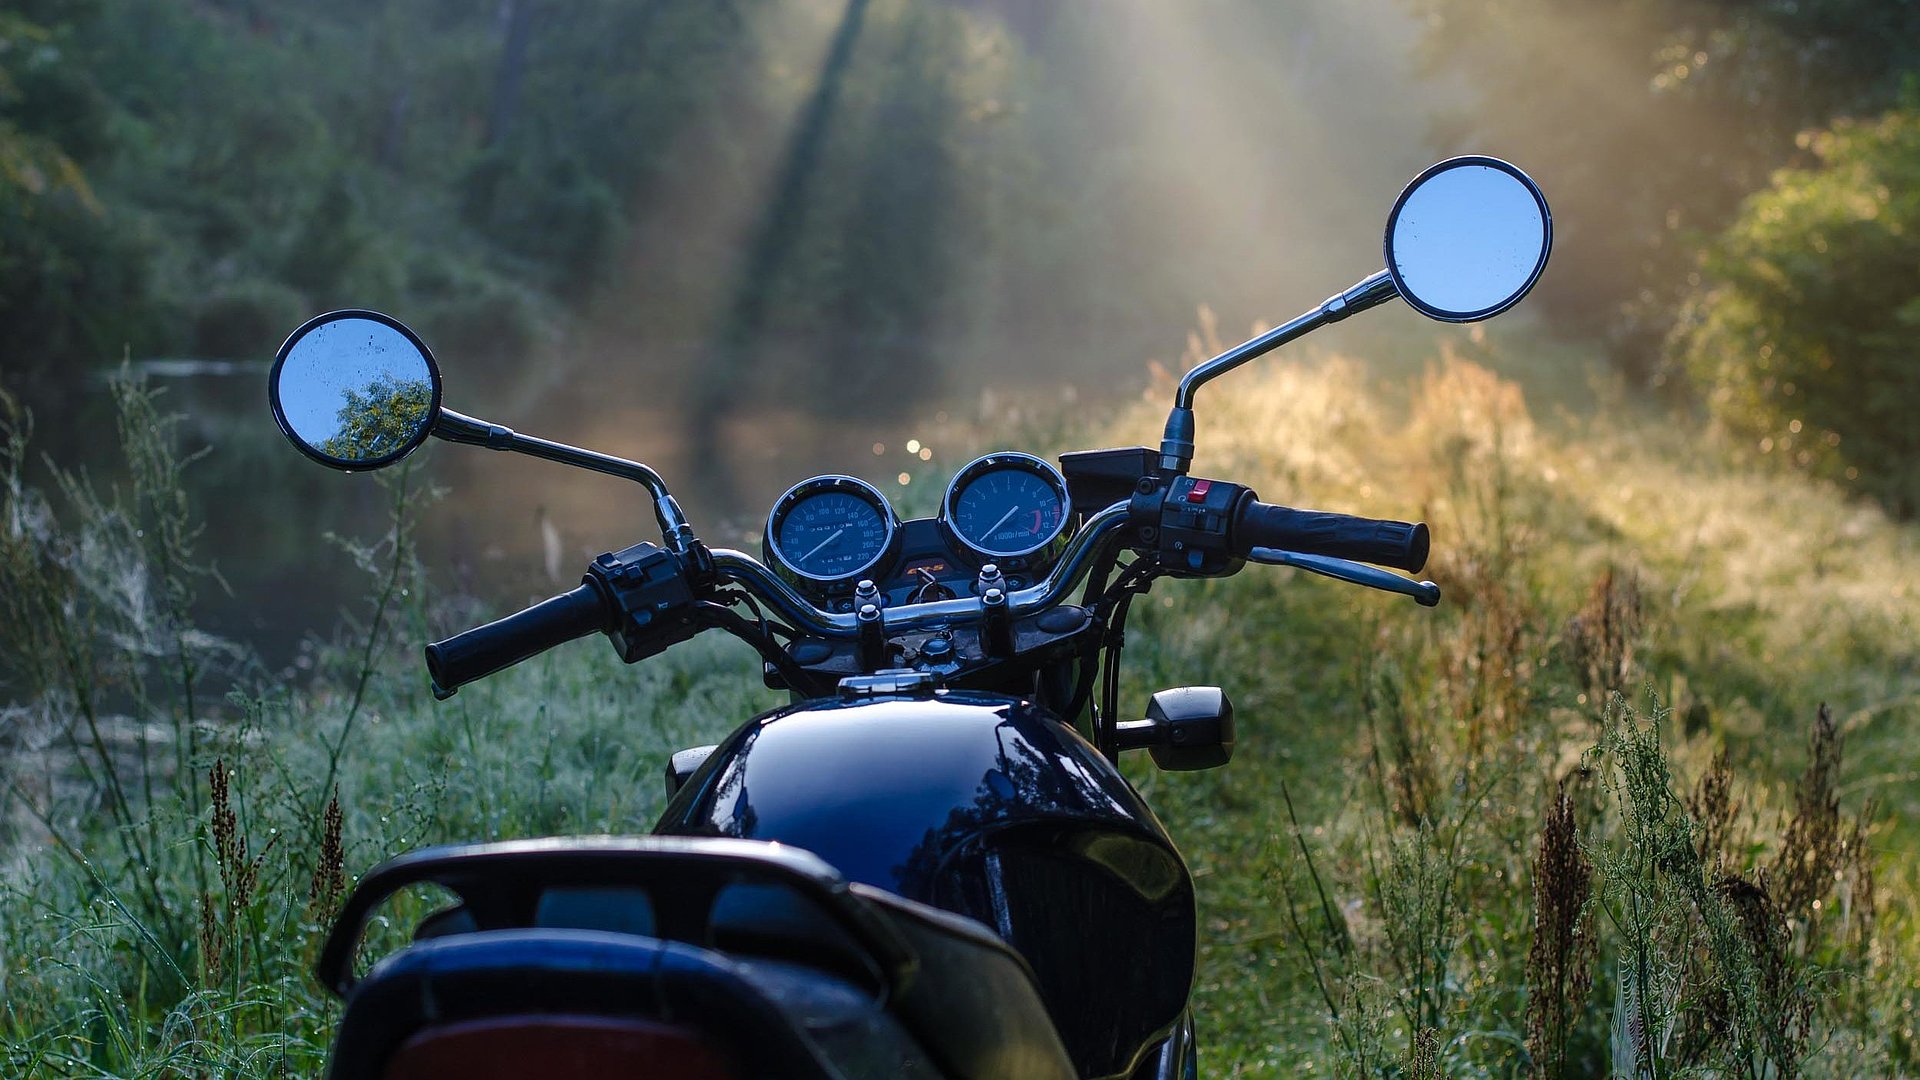 Motorrad-Urlaub in Bamberg - Motorrad im Wald